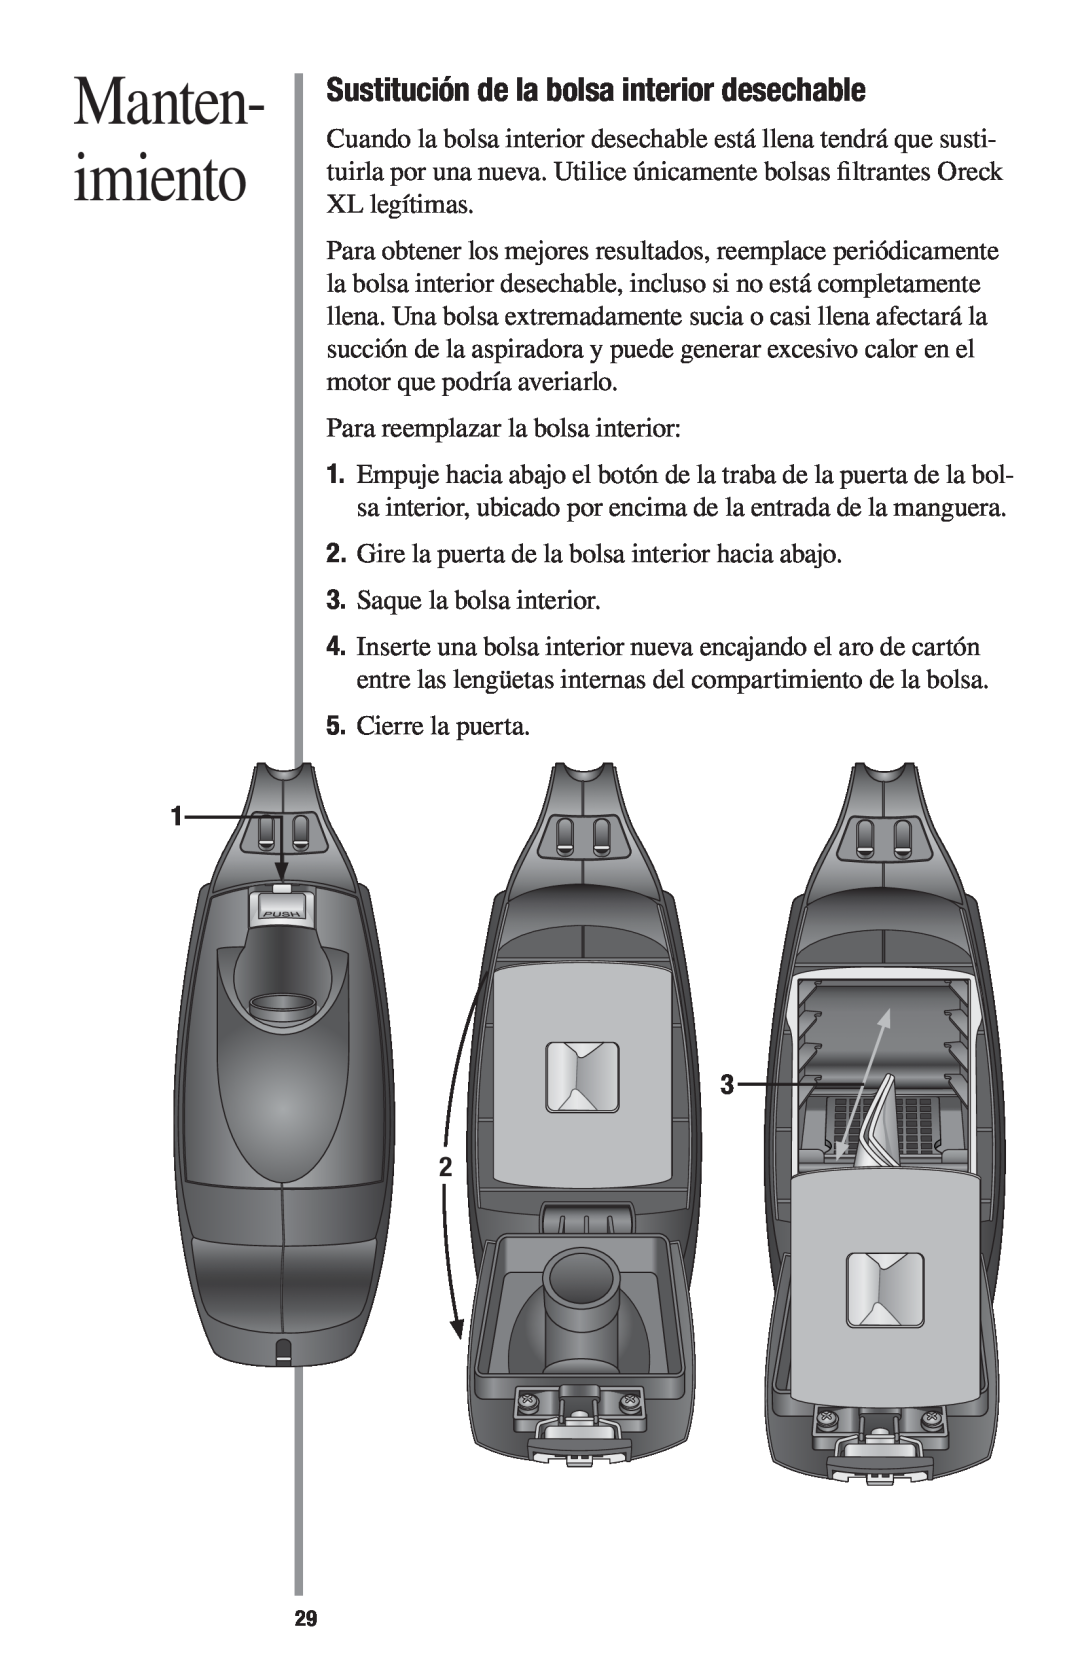 Oreck 1600 manual Manten- imiento, Sustitución de la bolsa interior desechable 